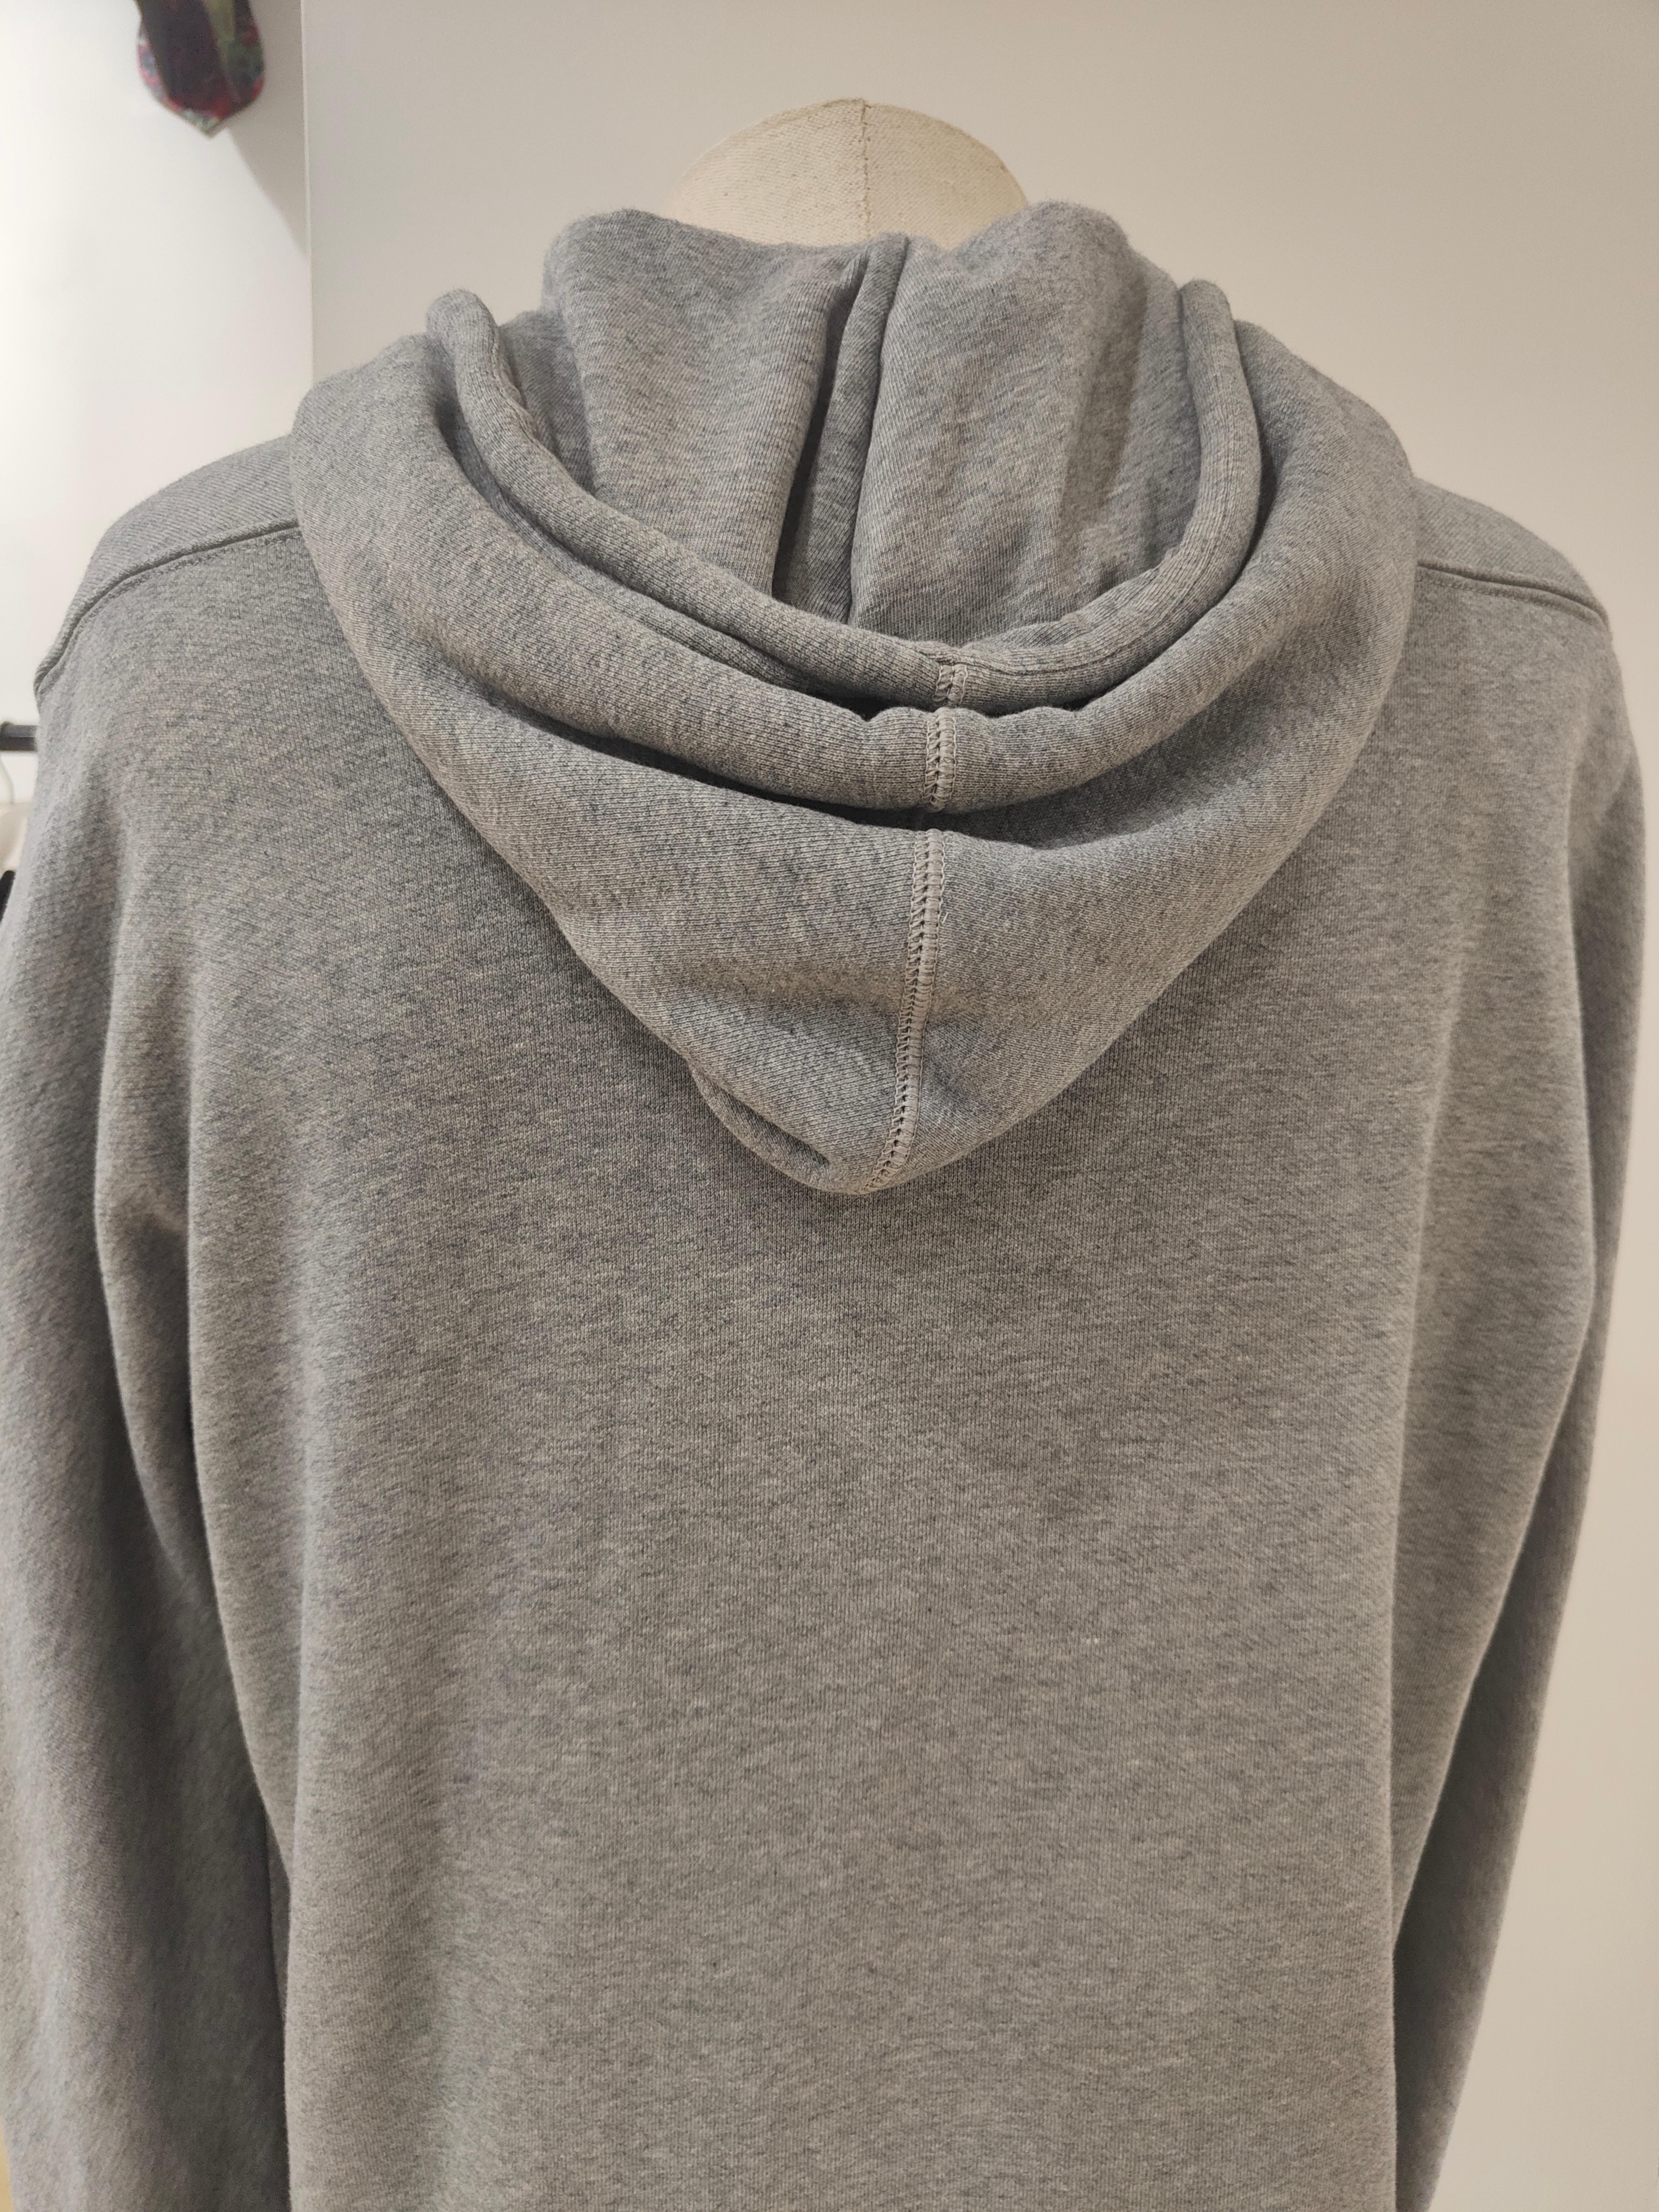 Balenciaga grey cotton sweater For Sale 1